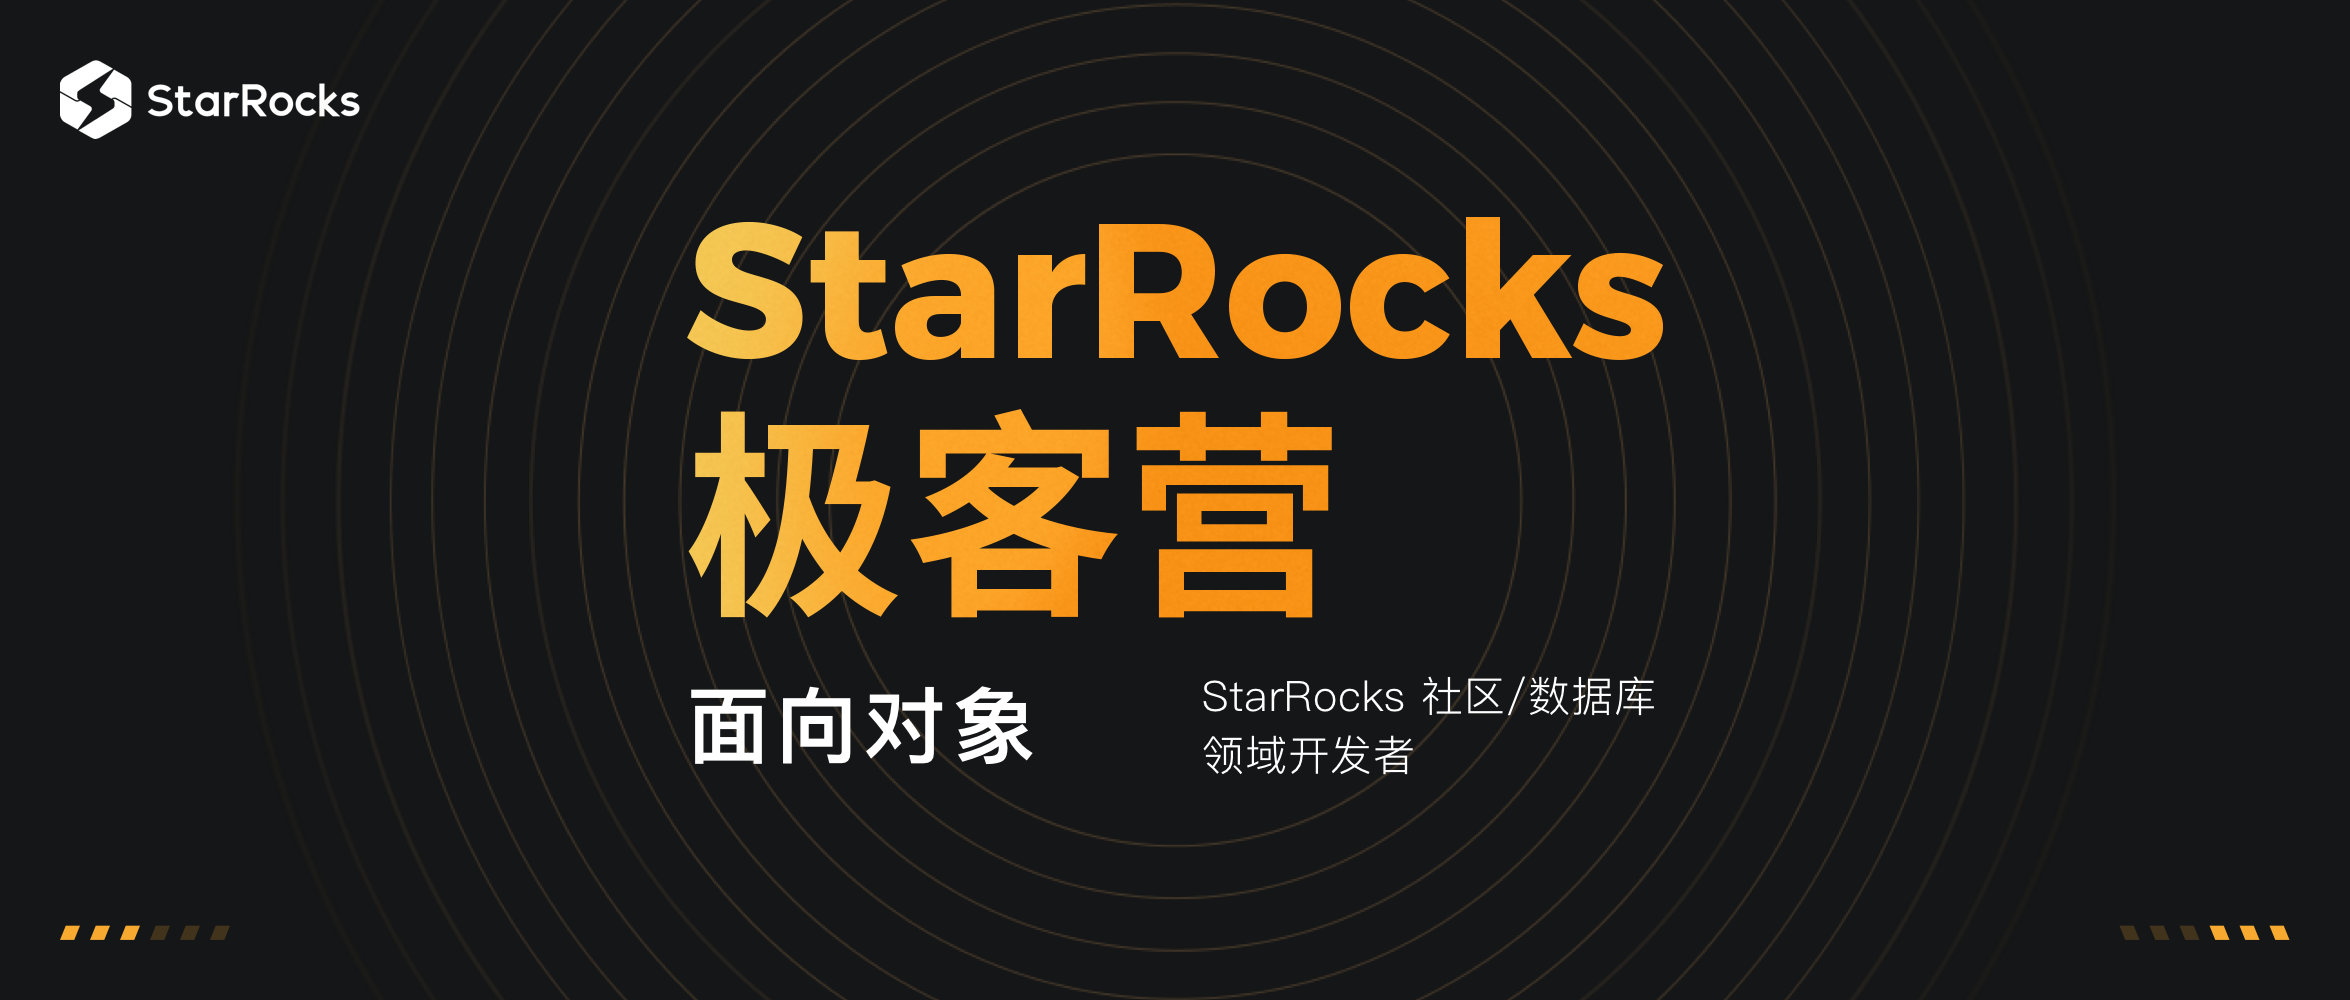 “StarRocks 极客营” 重磅来袭，和技术大牛一起推开数据库梦想之门！